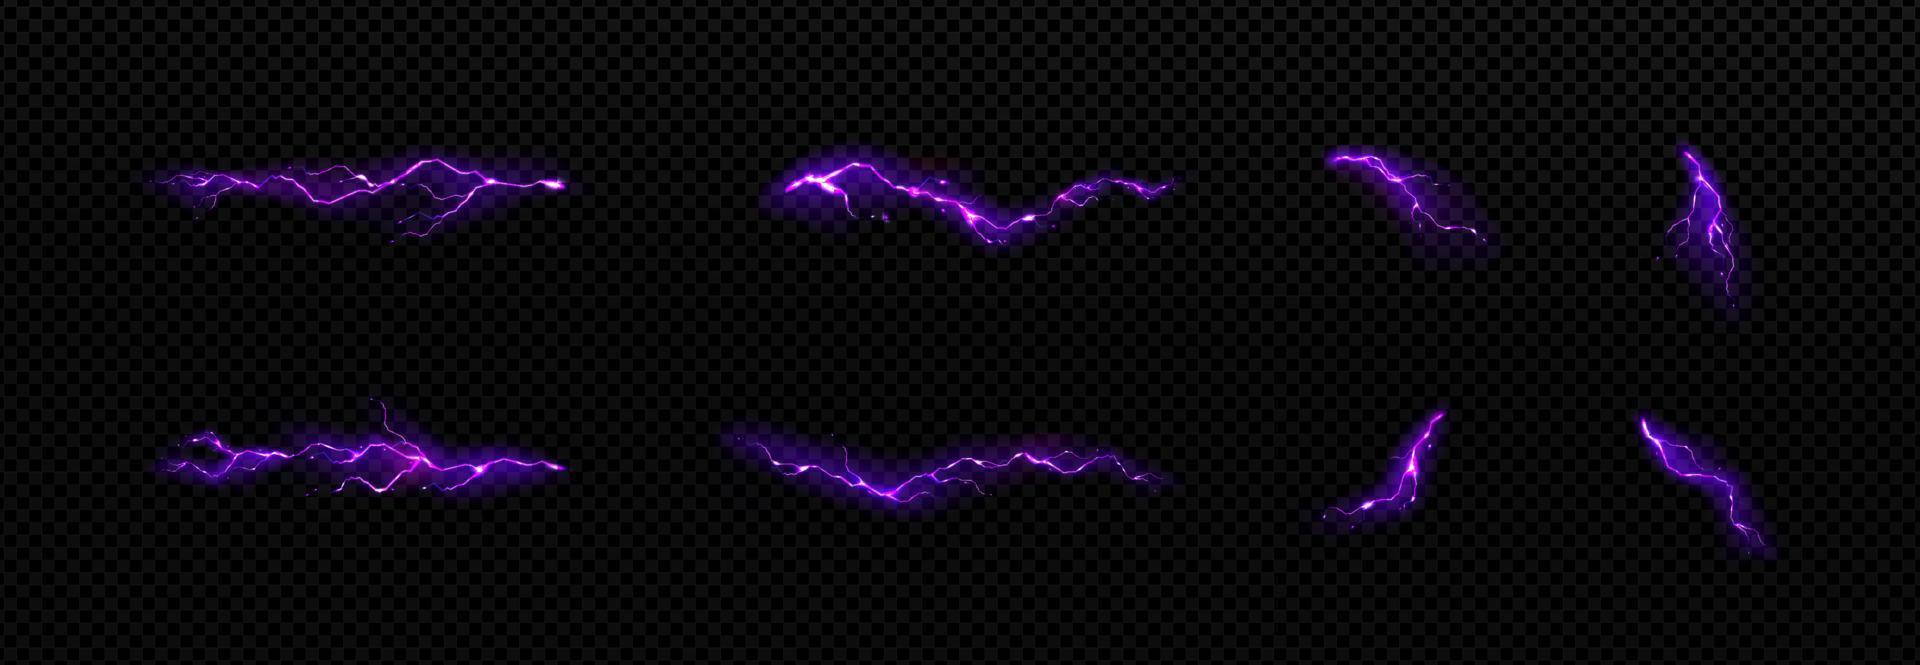 relámpago, conjunto de golpes de rayo púrpura eléctrico vector